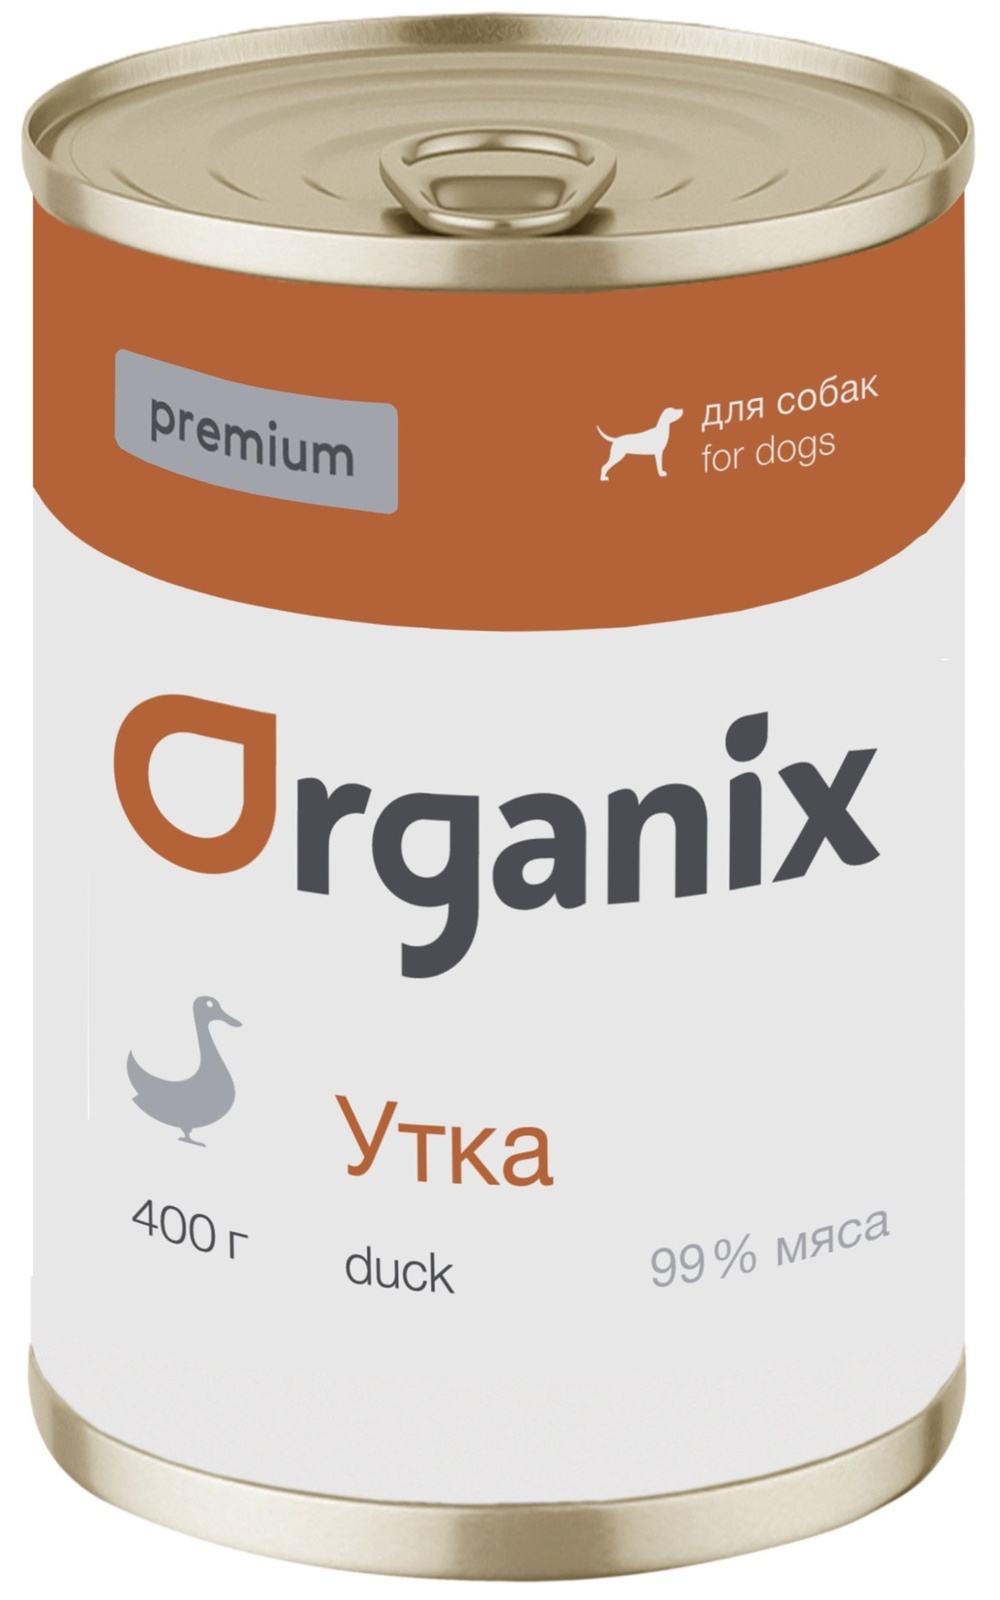 Organix консервы Organix монобелковые премиум консервы для собак, с уткой (100 г) organix консервы organix монобелковые премиум консервы для собак с кониной 400 г